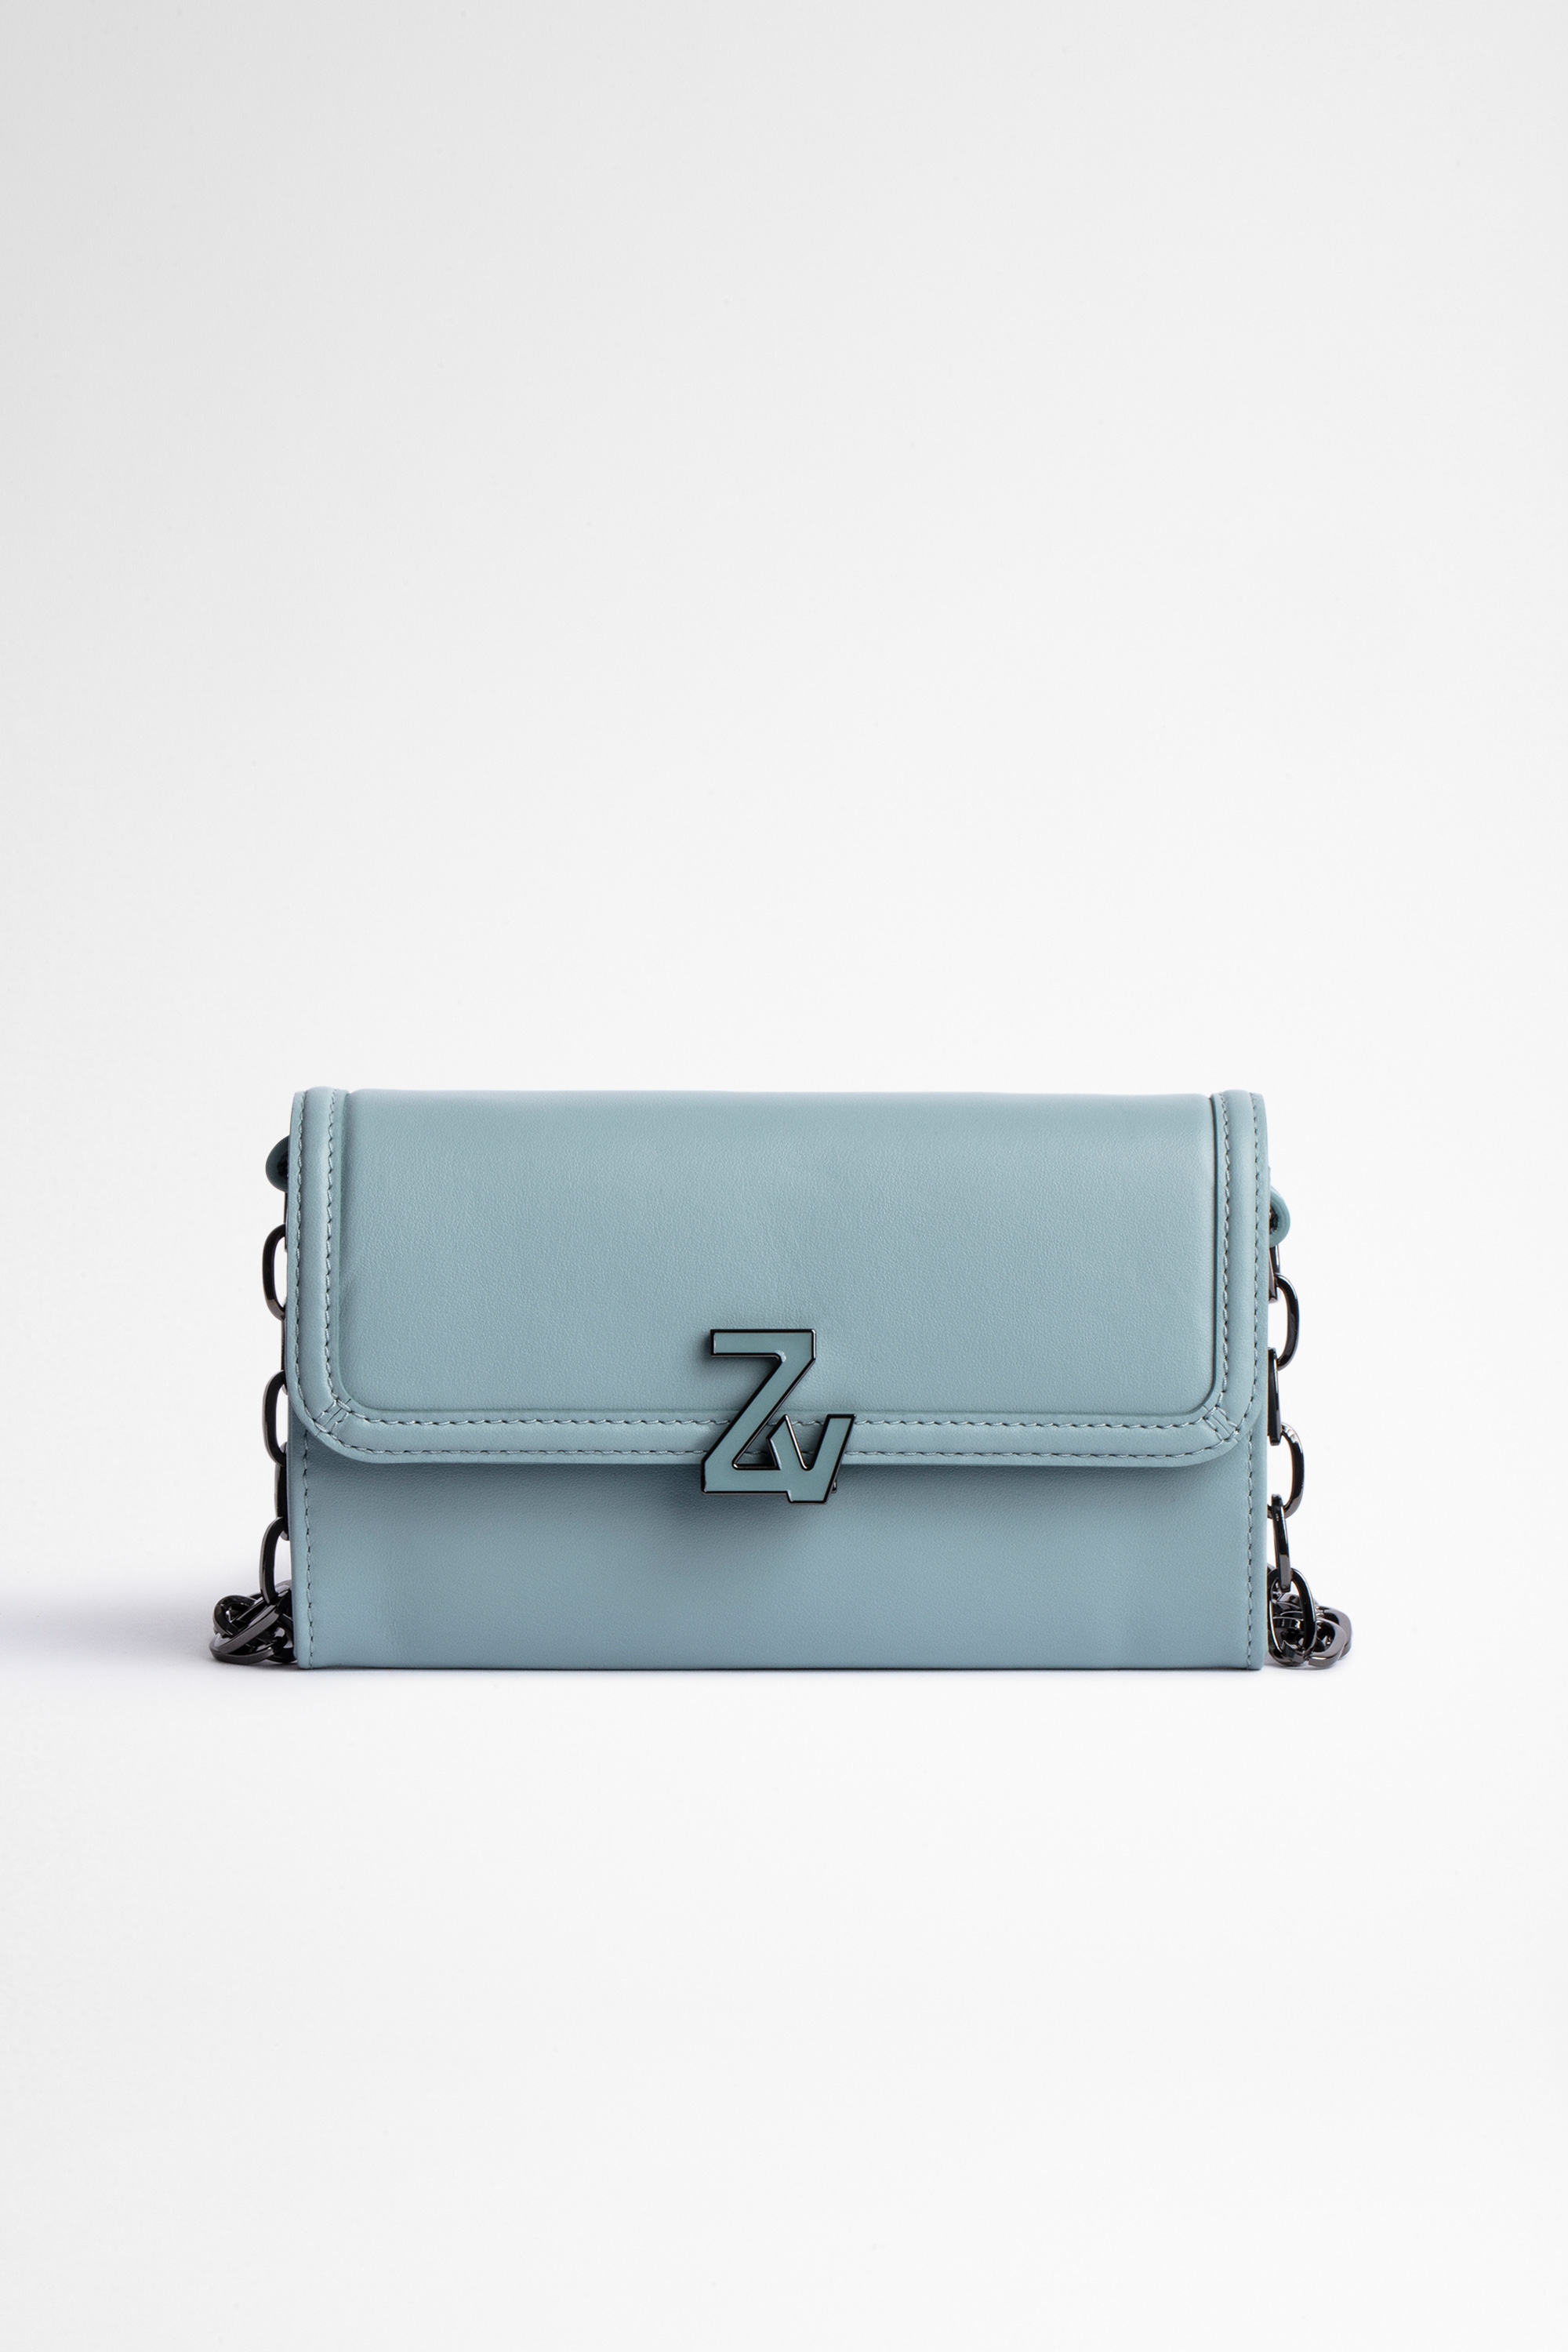 ZV Initiale Le Long Bag